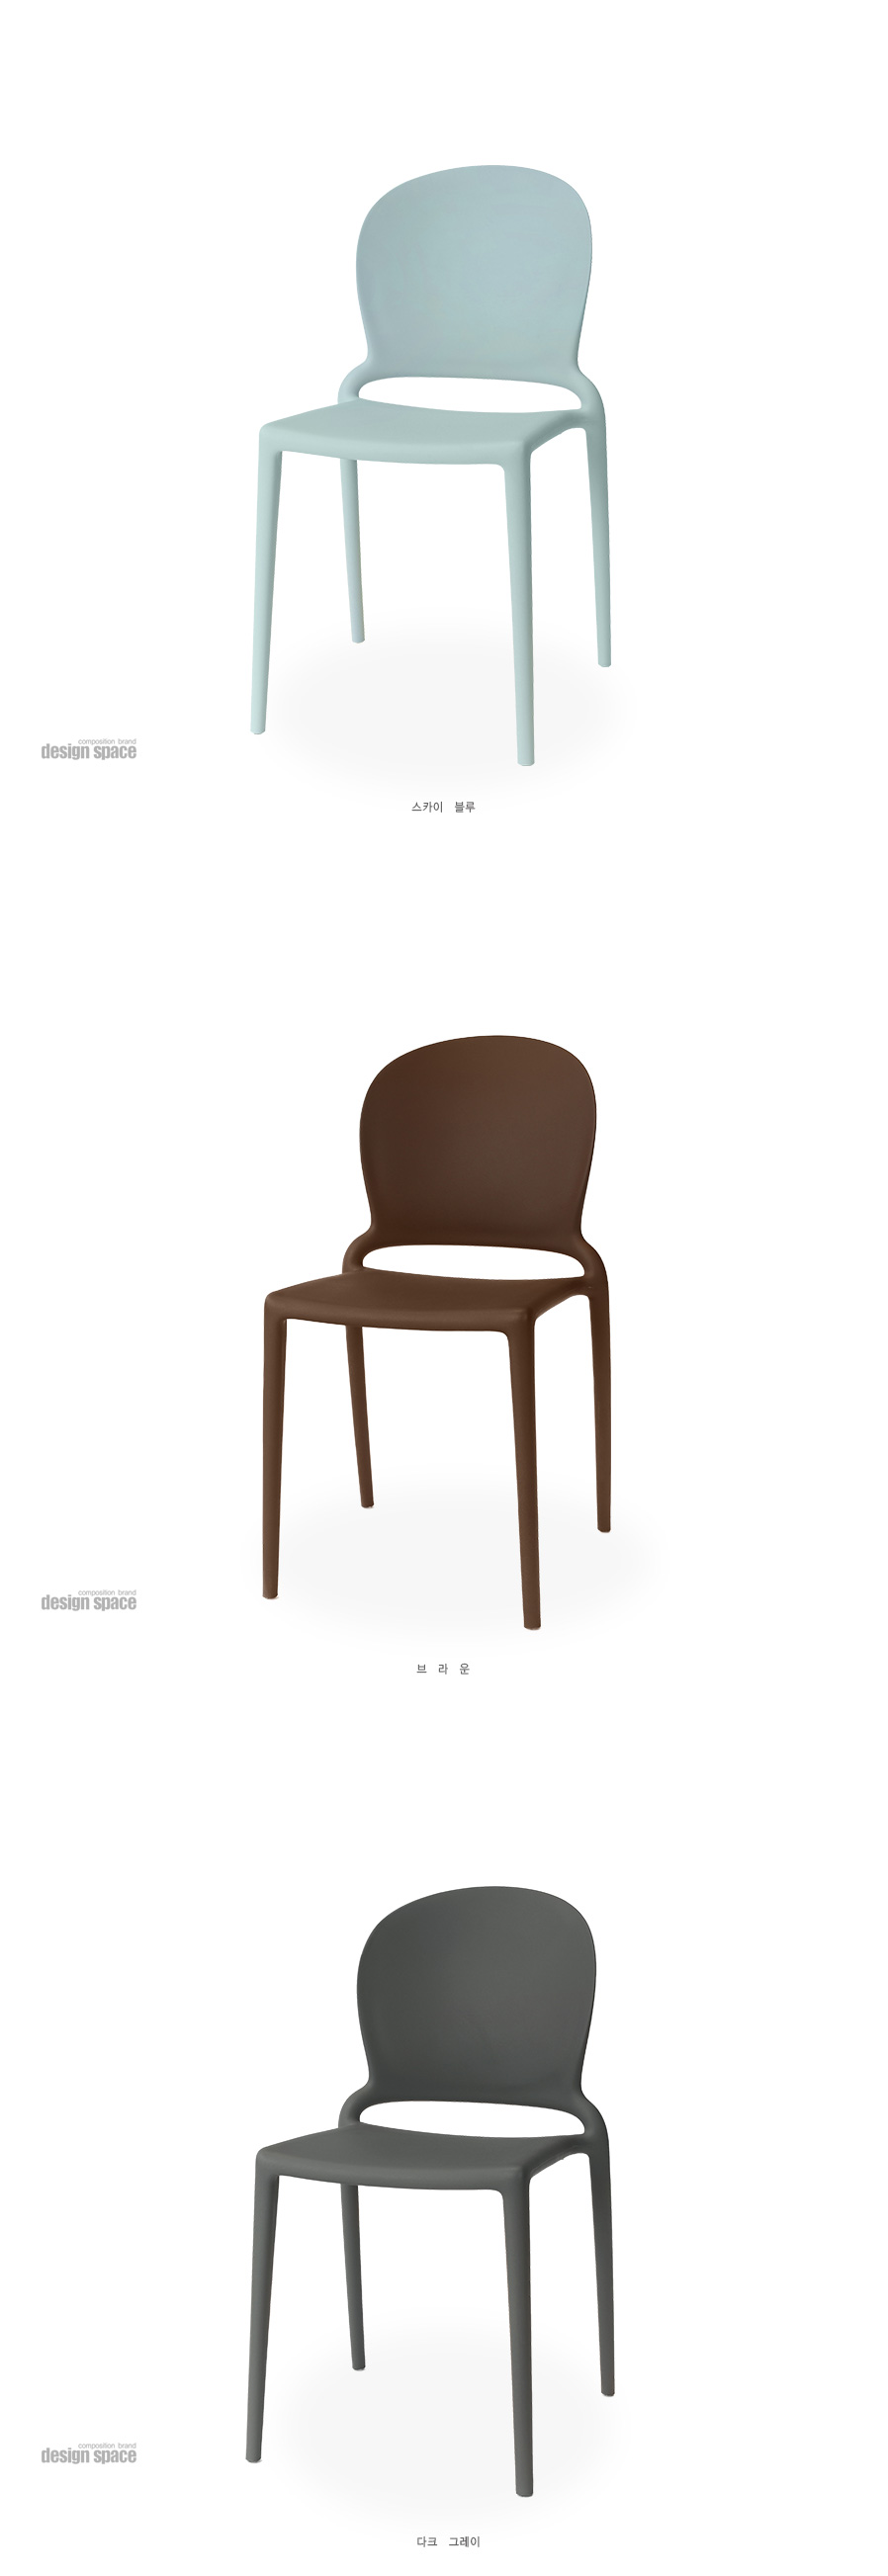 nancy-chair-(낸시-체어-미들스쿨)_02.jpg